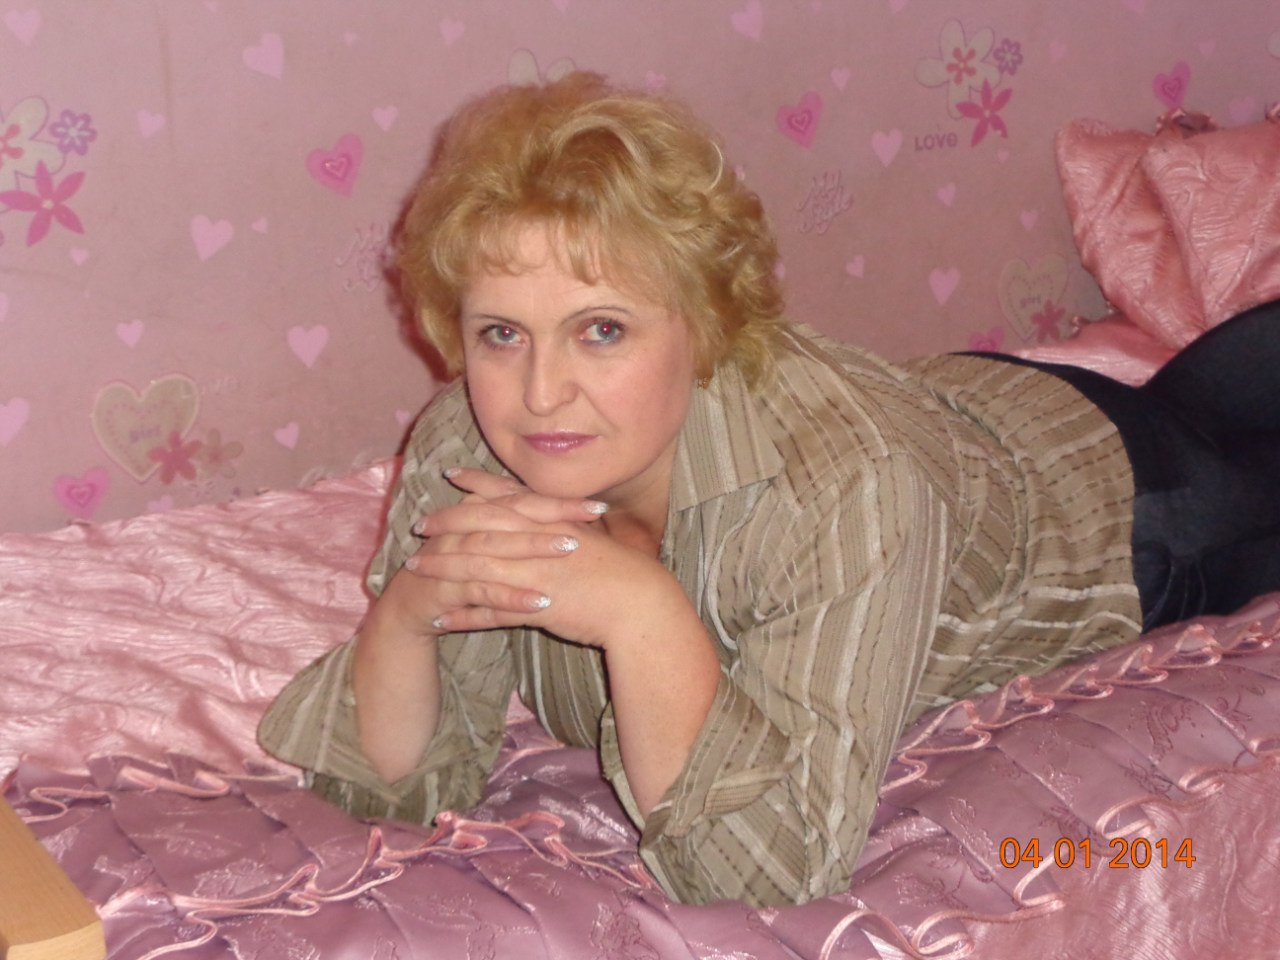 Сайт знакомств московская область для серьезных. Женщина 54 года. Женщины 55-60 лет. Женщины за 55. Женщины 65 лет для серьезных отношений.